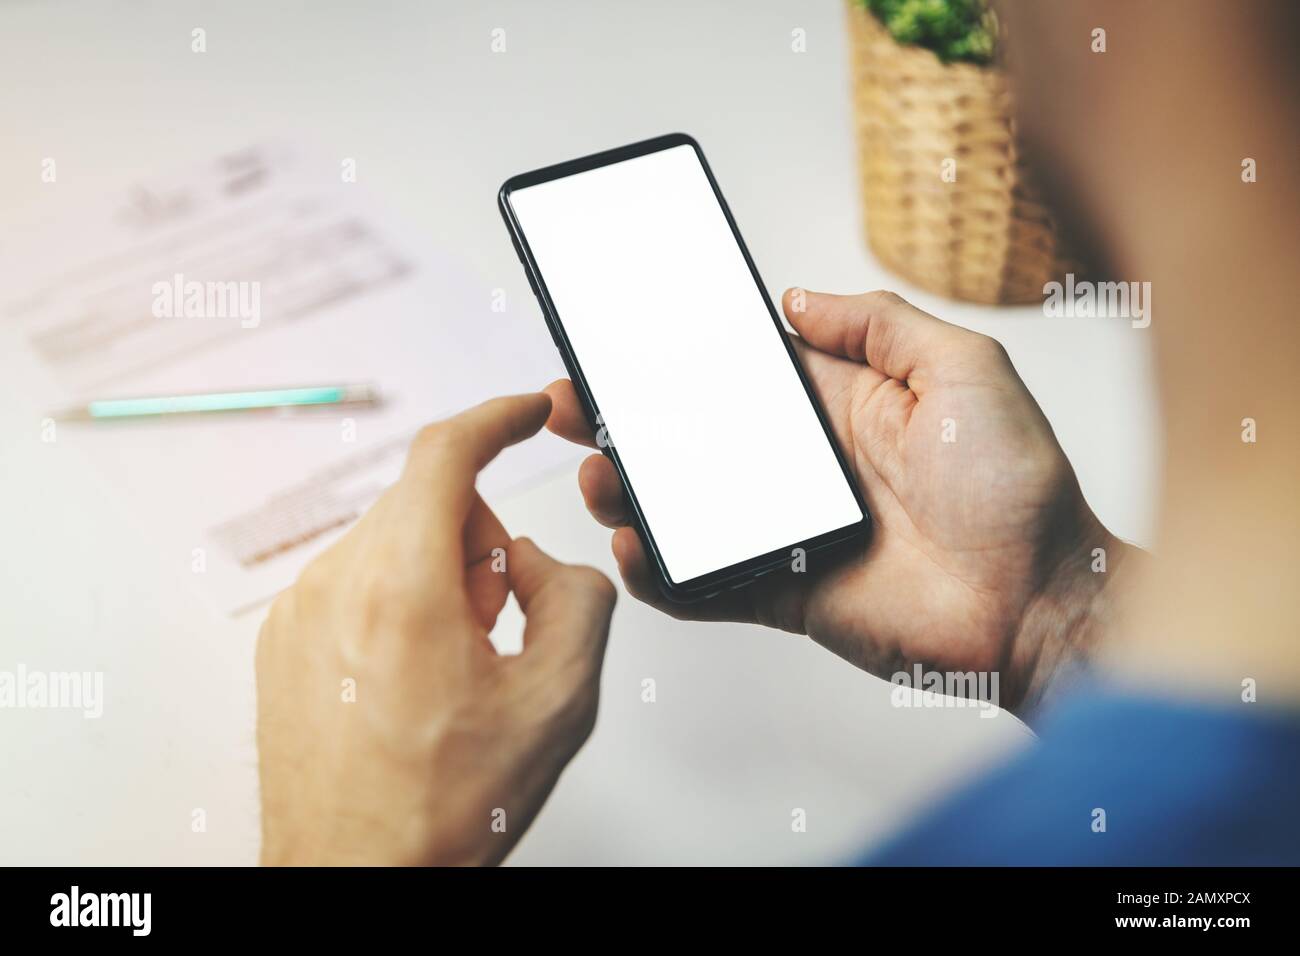 homme utilisant un smartphone pour les transactions financières. tenir le téléphone avec un écran vide en main Banque D'Images